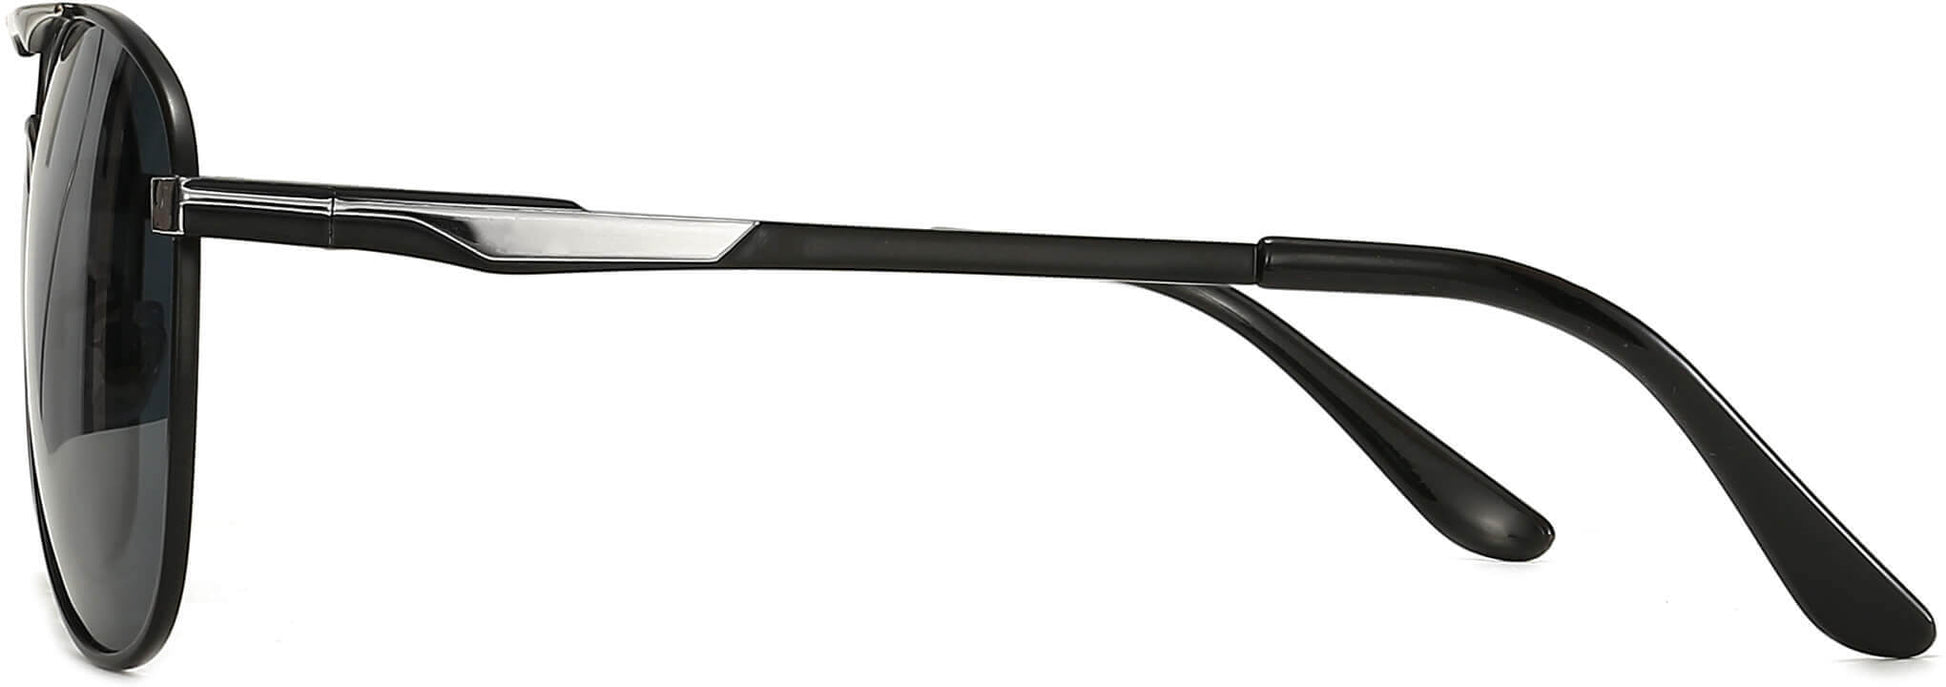 Hiram Black Stainless steel Sunglasses from ANRRI